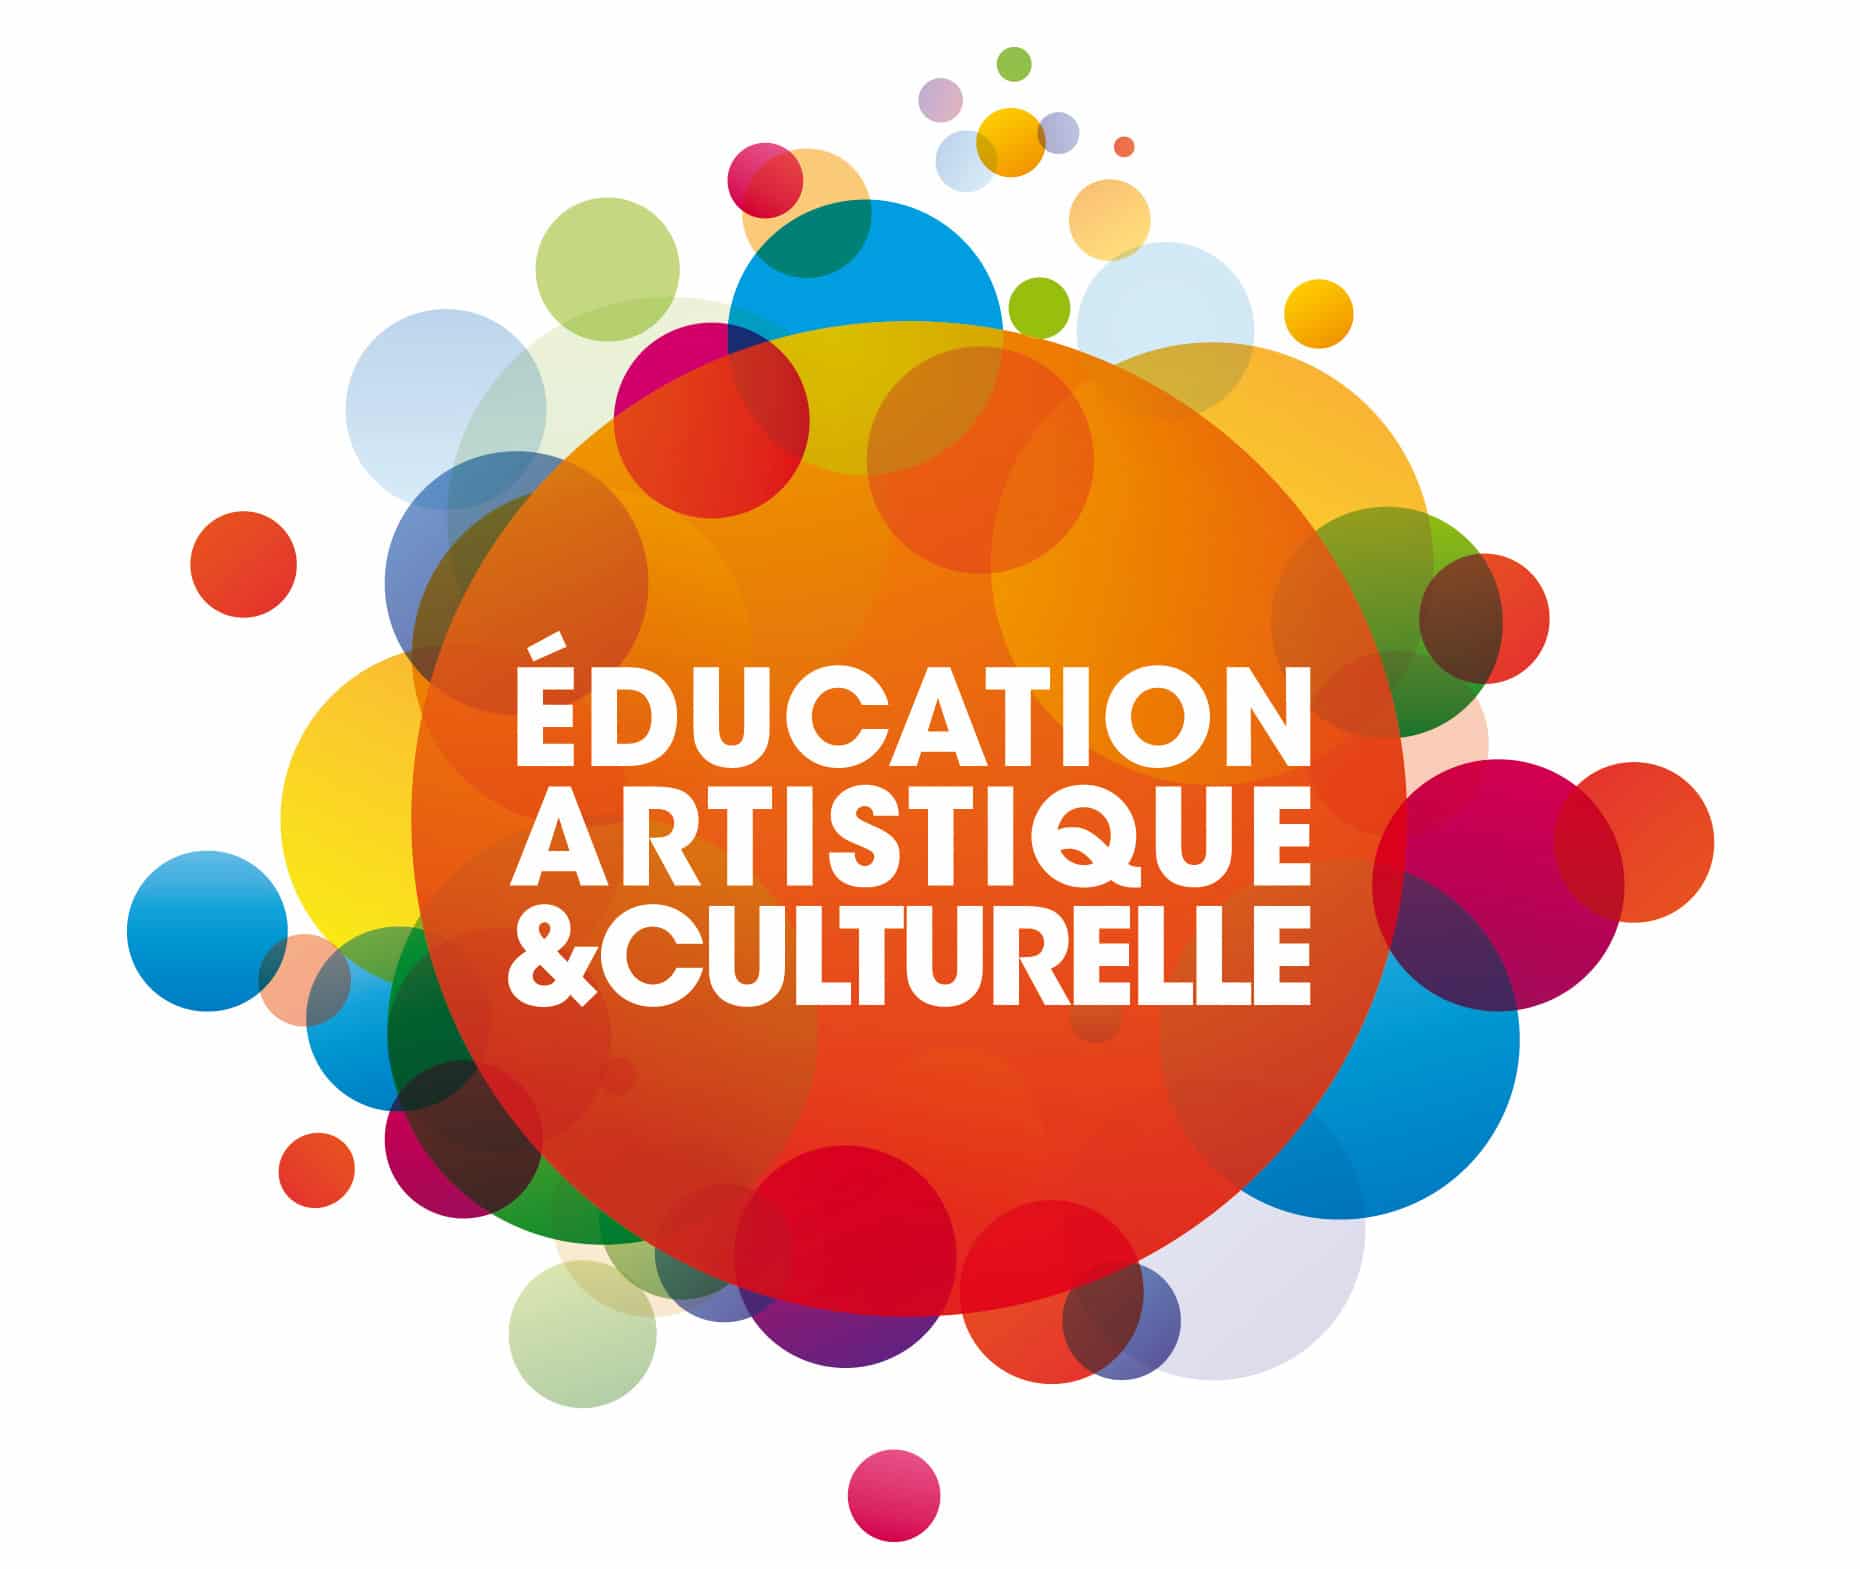 Education artistique et culturelle